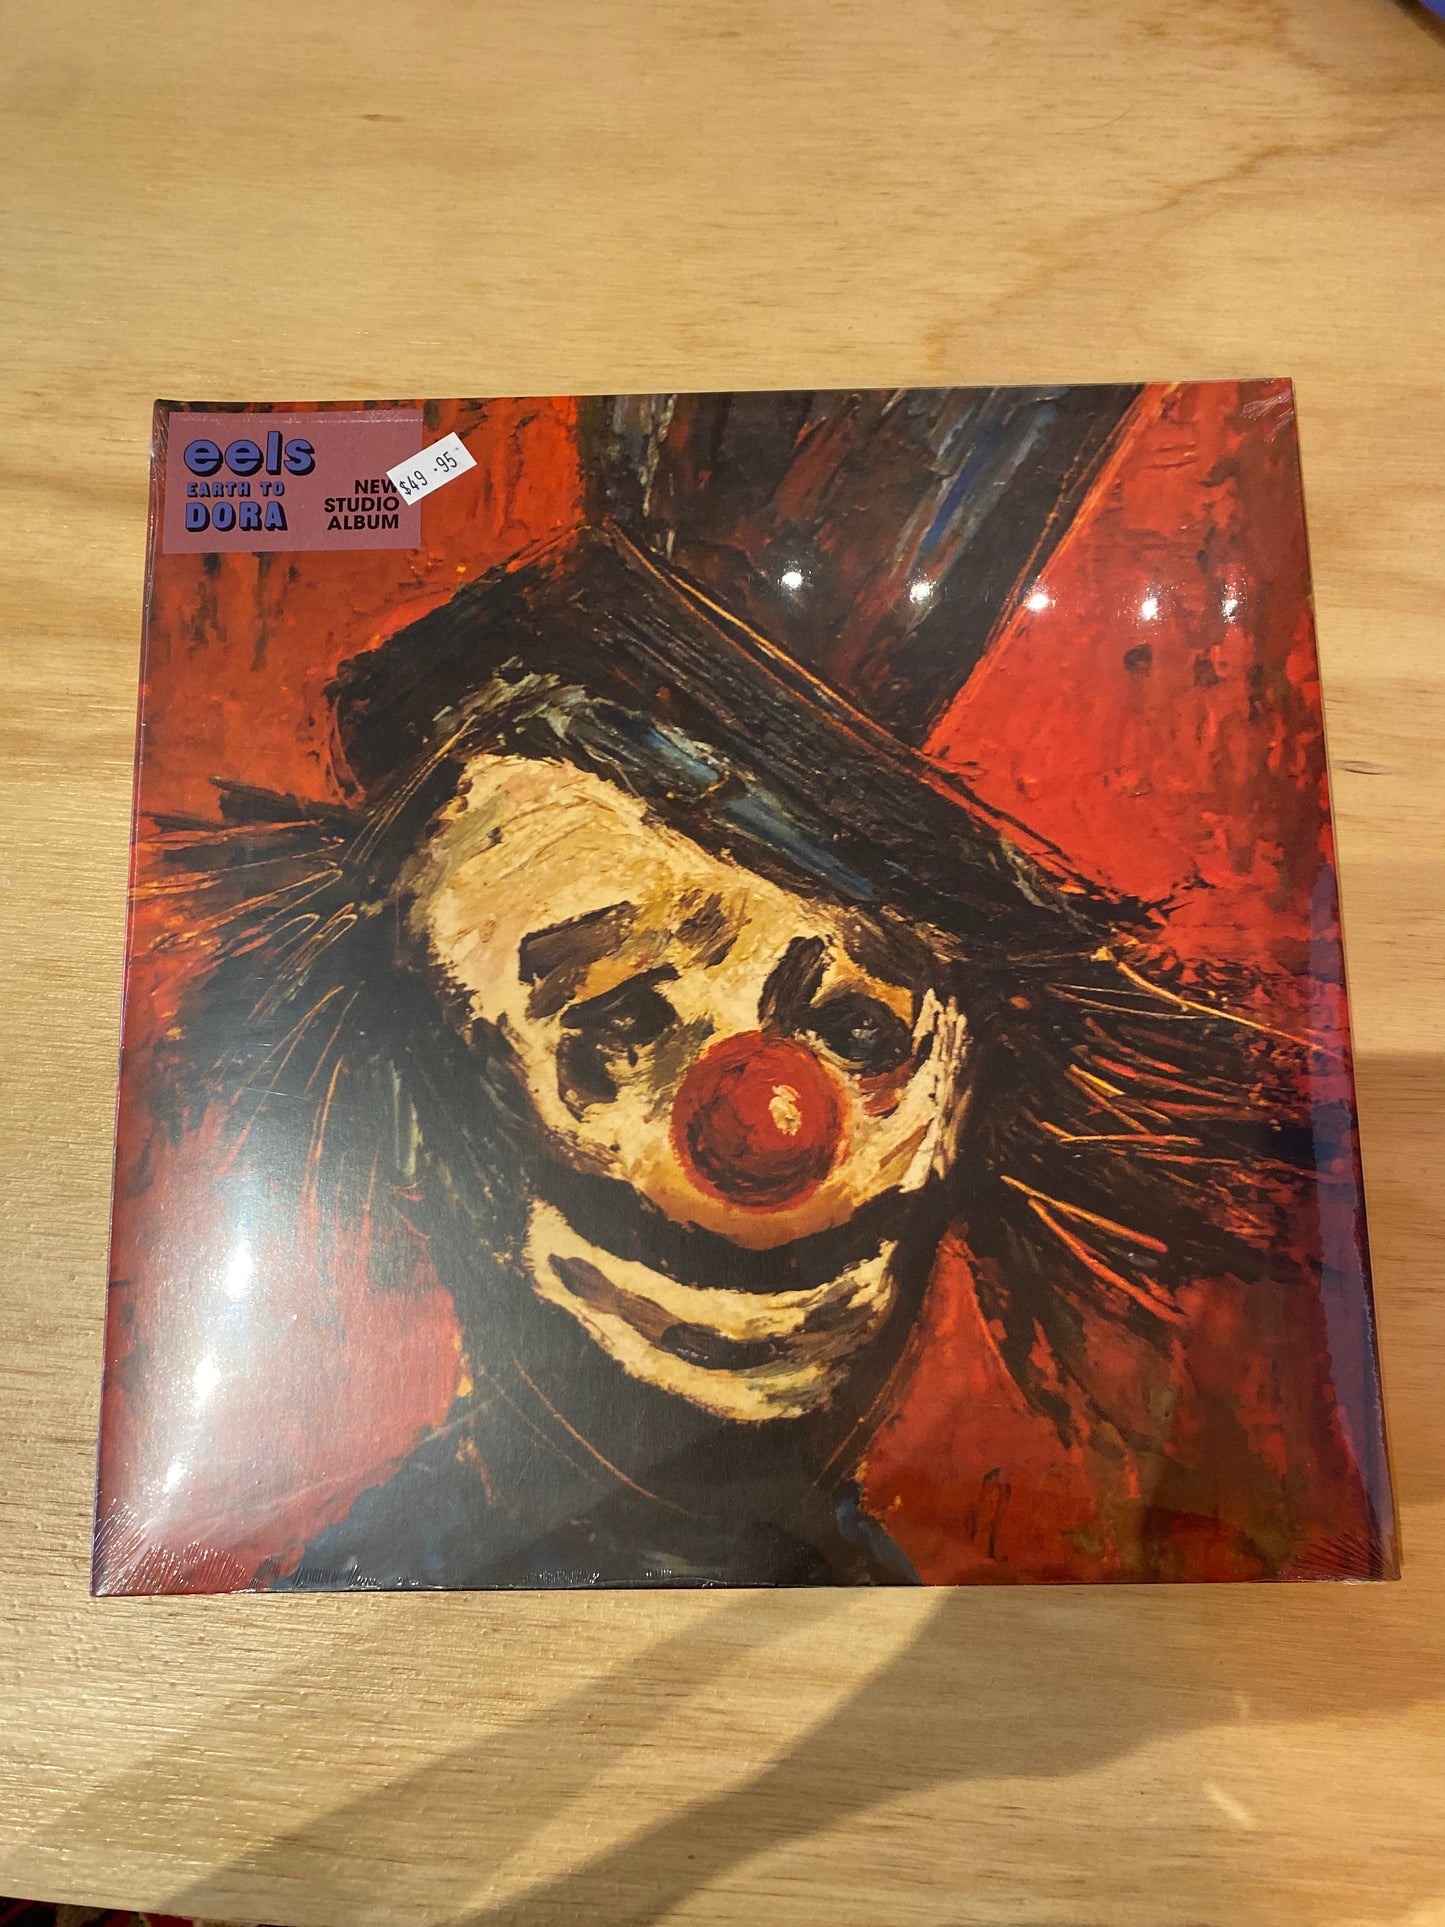 Eels - Earth to Dora - Vinyl LP